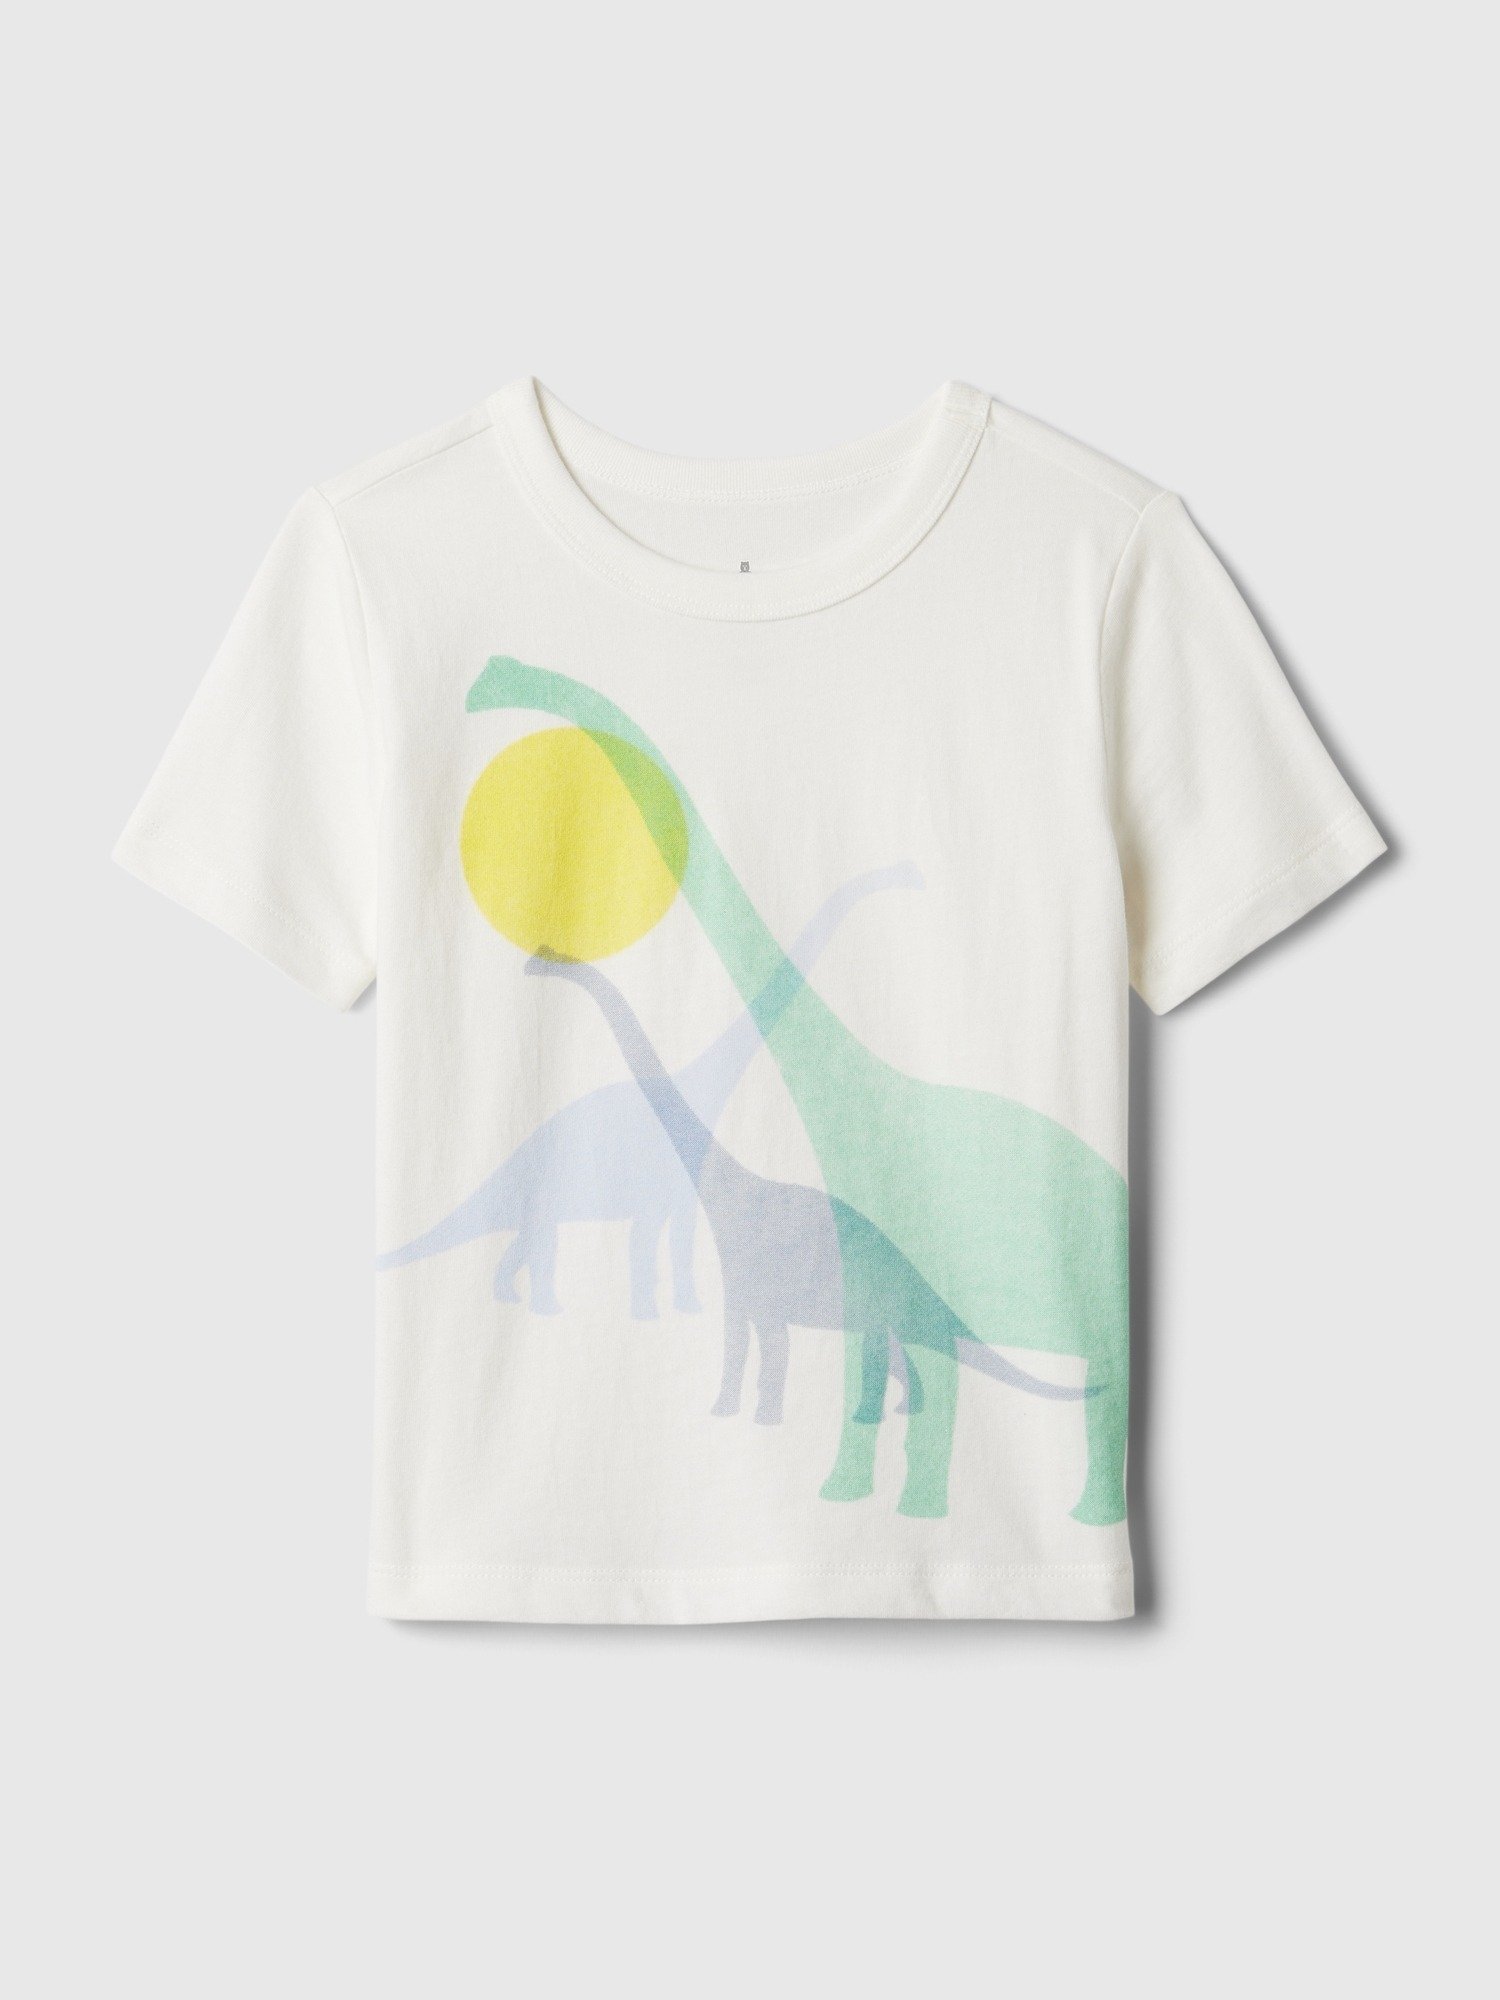 Mix and Match Grafikli T-Shirt product image